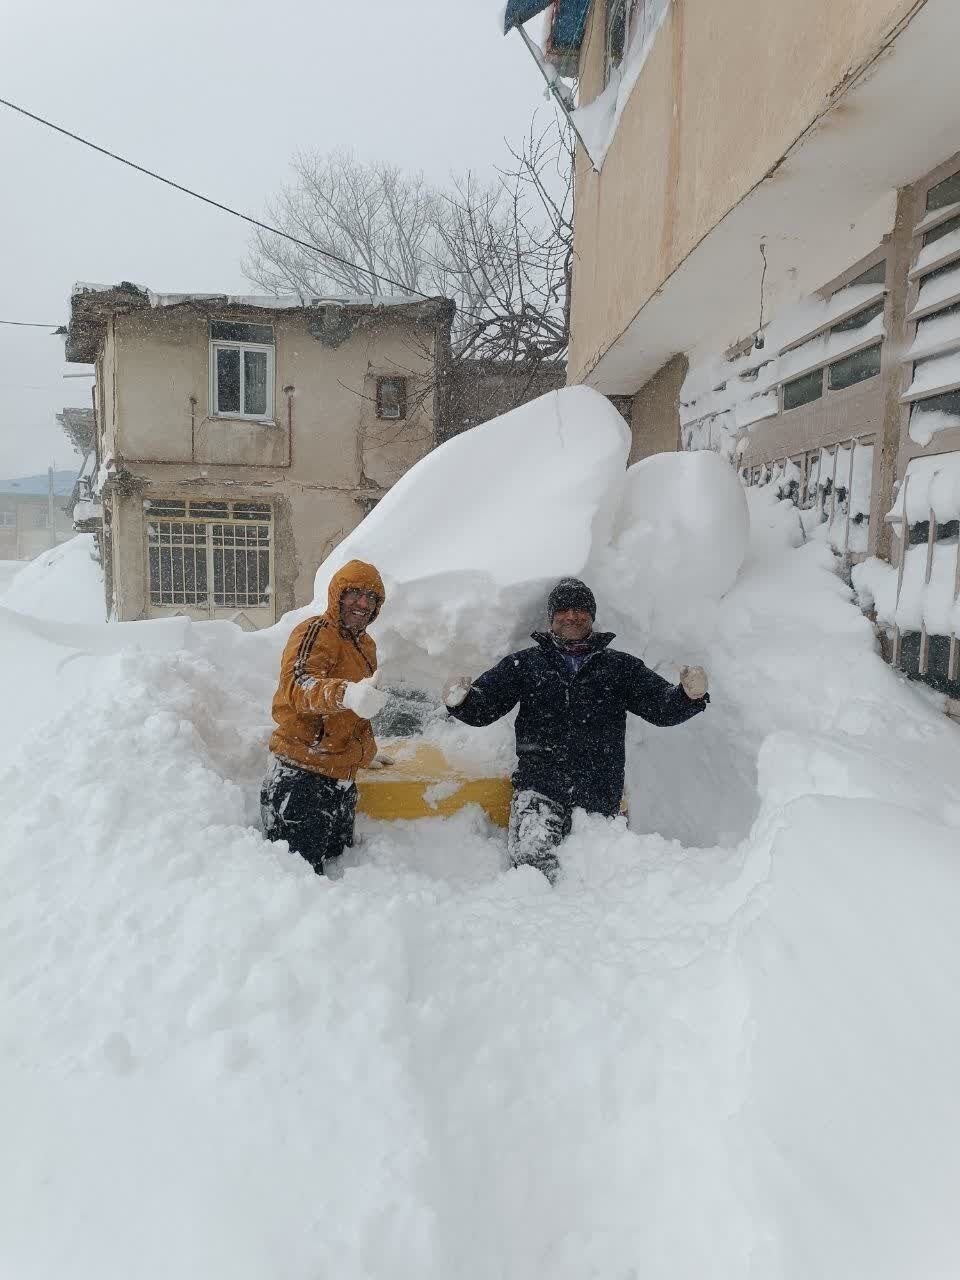 ارتفاع برف در استان شمالی مردم را شوکه کرد | تصویر